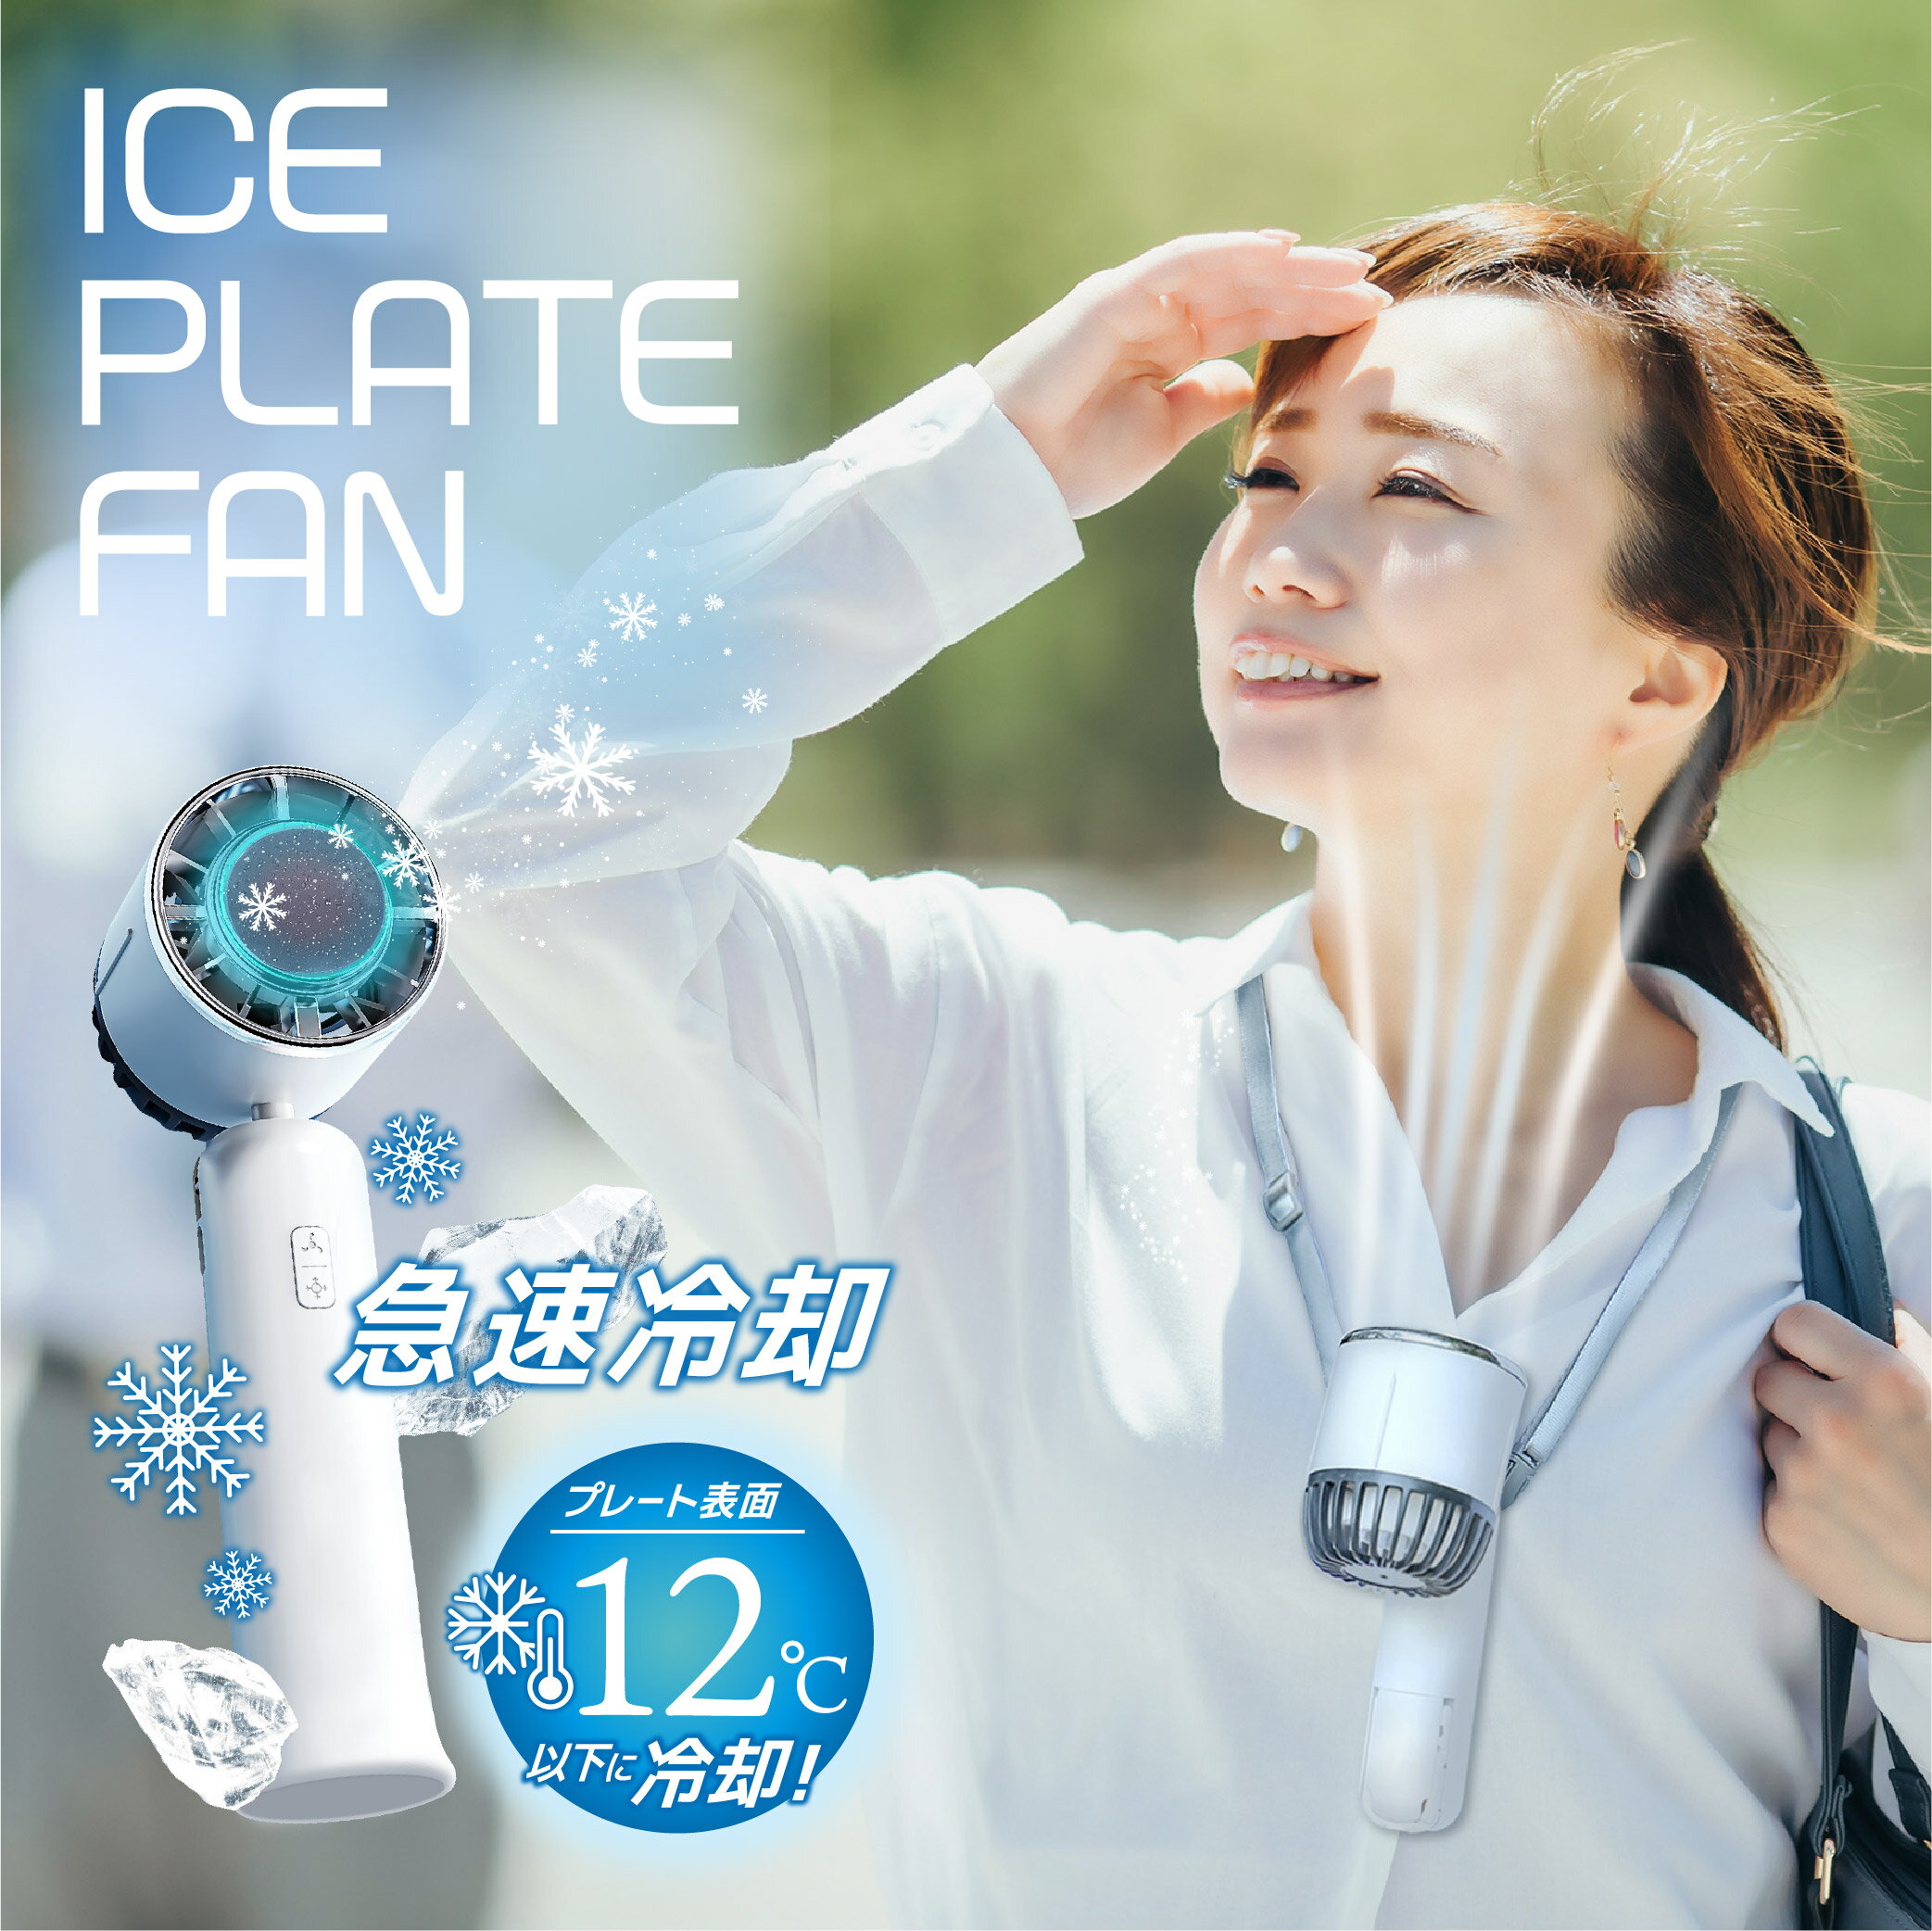 【クーポンで最安1個1980円】ICE PLATE 